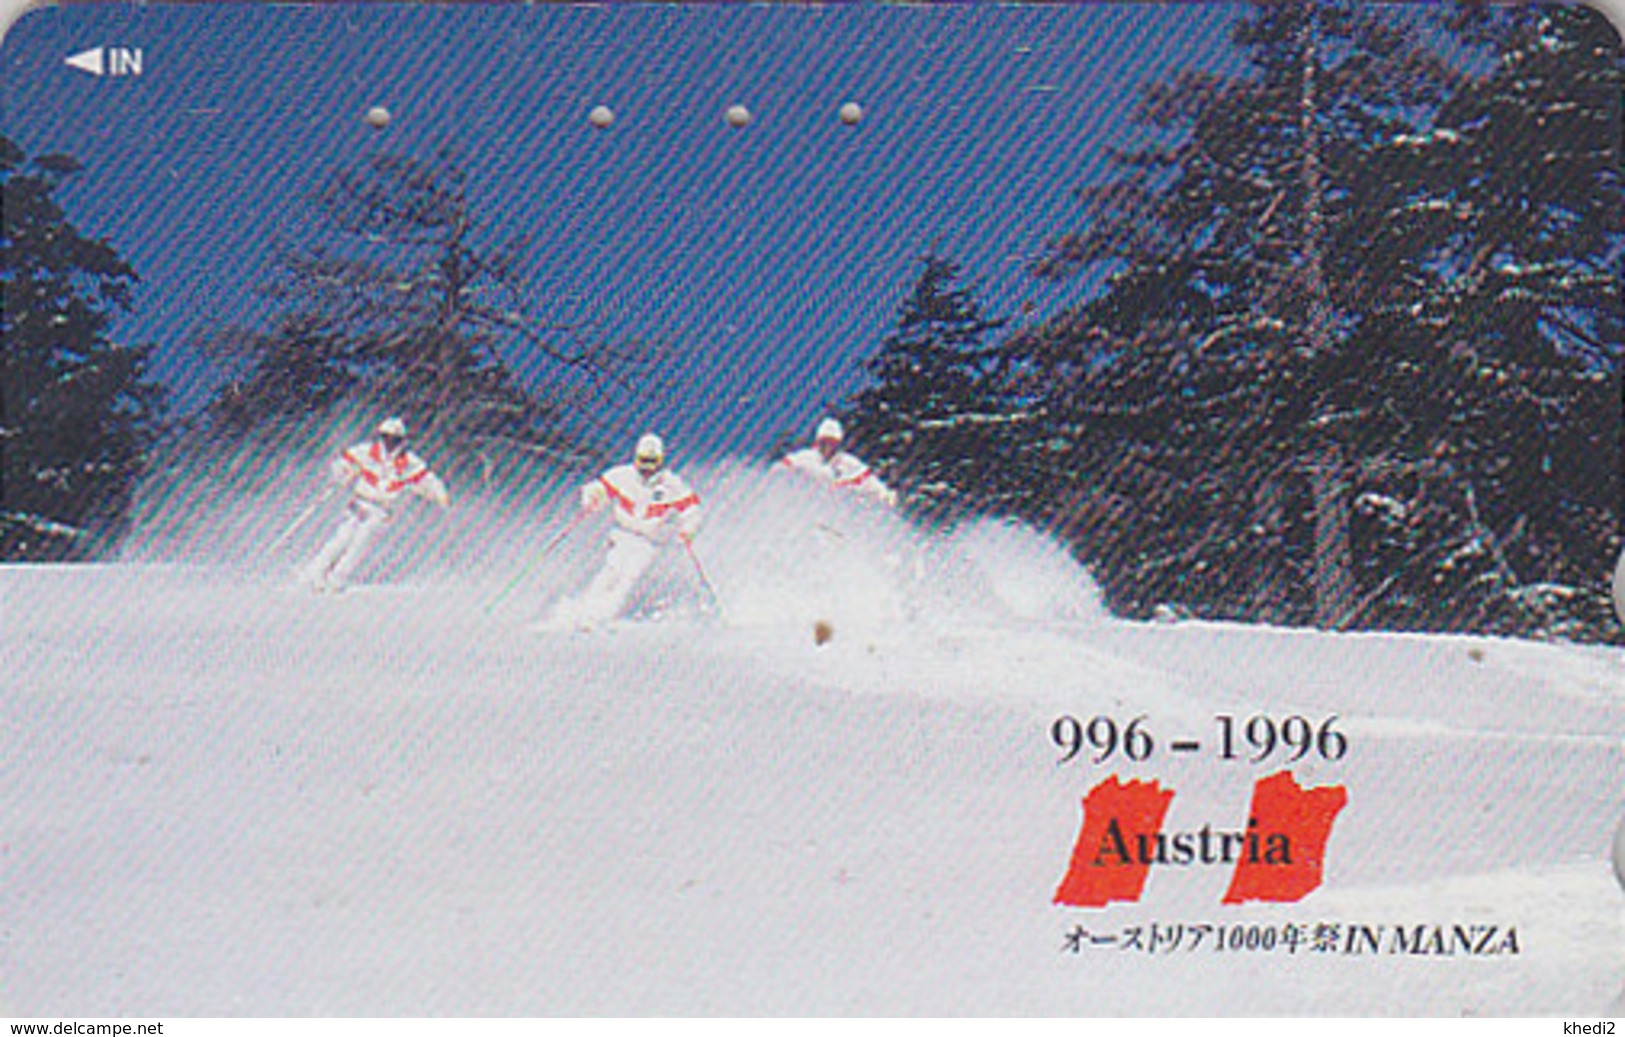 Télécarte Japon / 110-011 - Série 1000 ANS AUTRICHE - SKI In MANZA Japan Phonecard - AUSTRIA Rel Telefonkarte - 02 - Sport